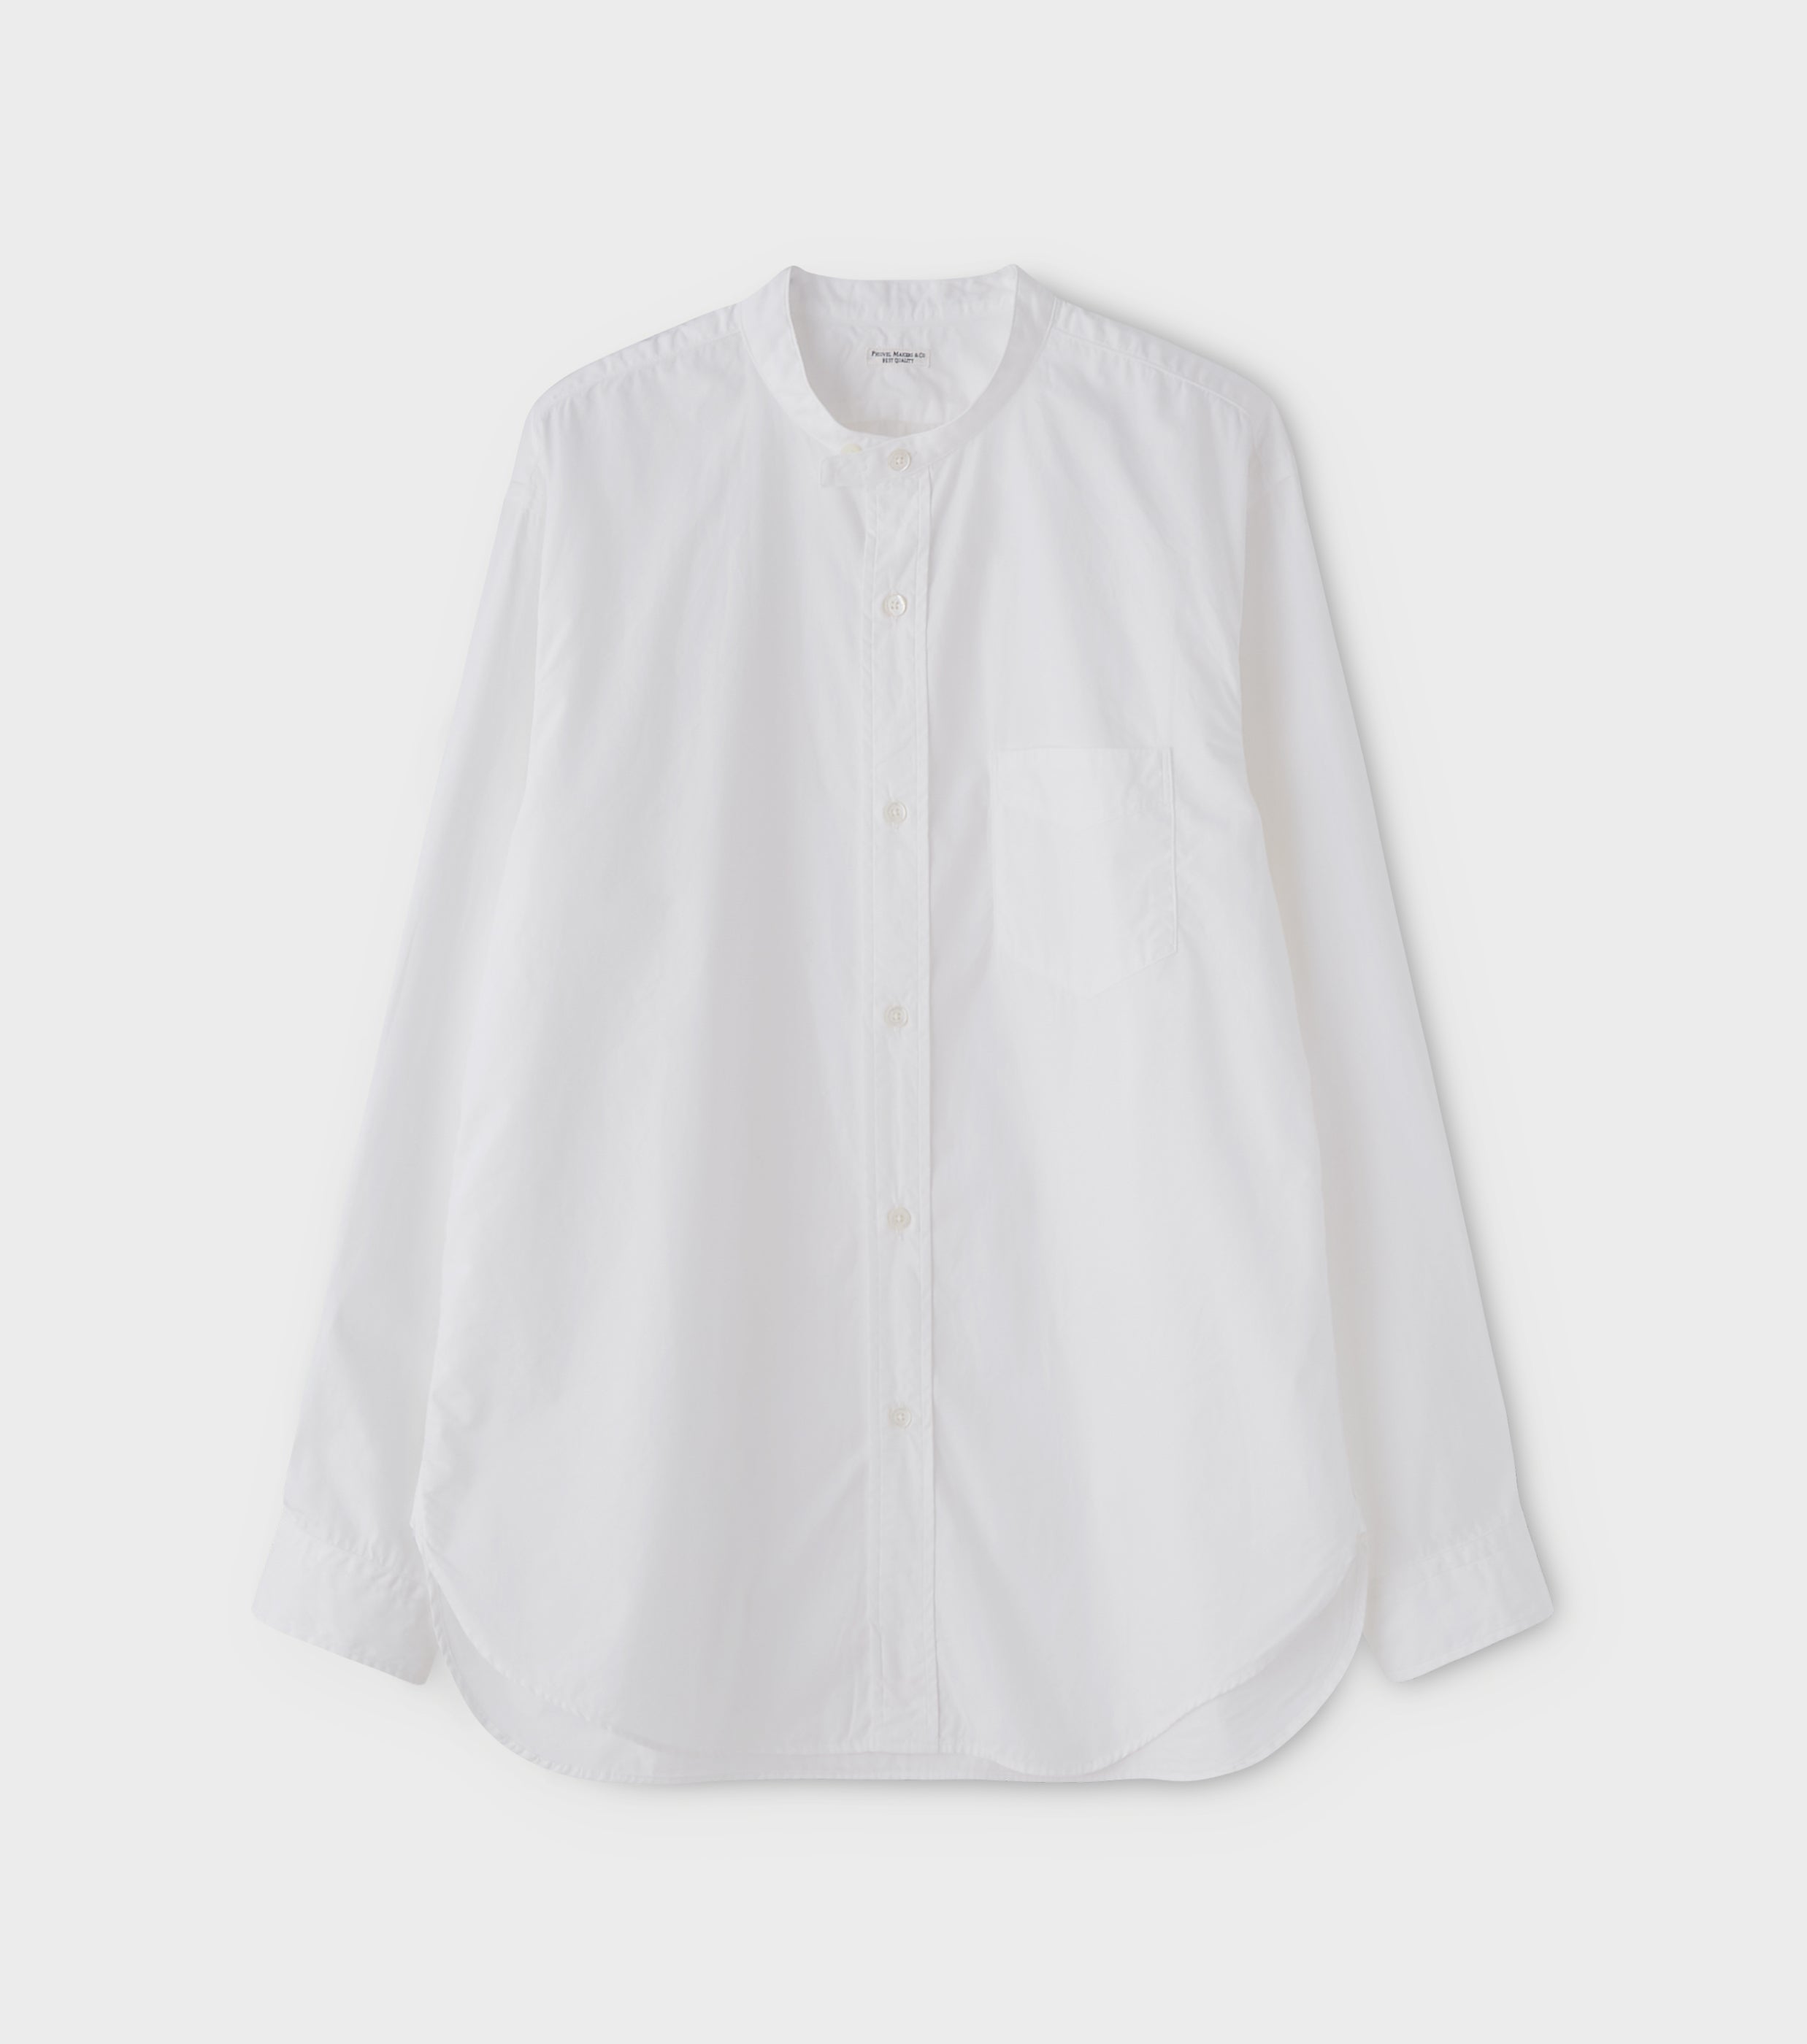 PHIGVEL フィグベル BAND COLLAR DRESS SHIRT バンドカラーシャツ